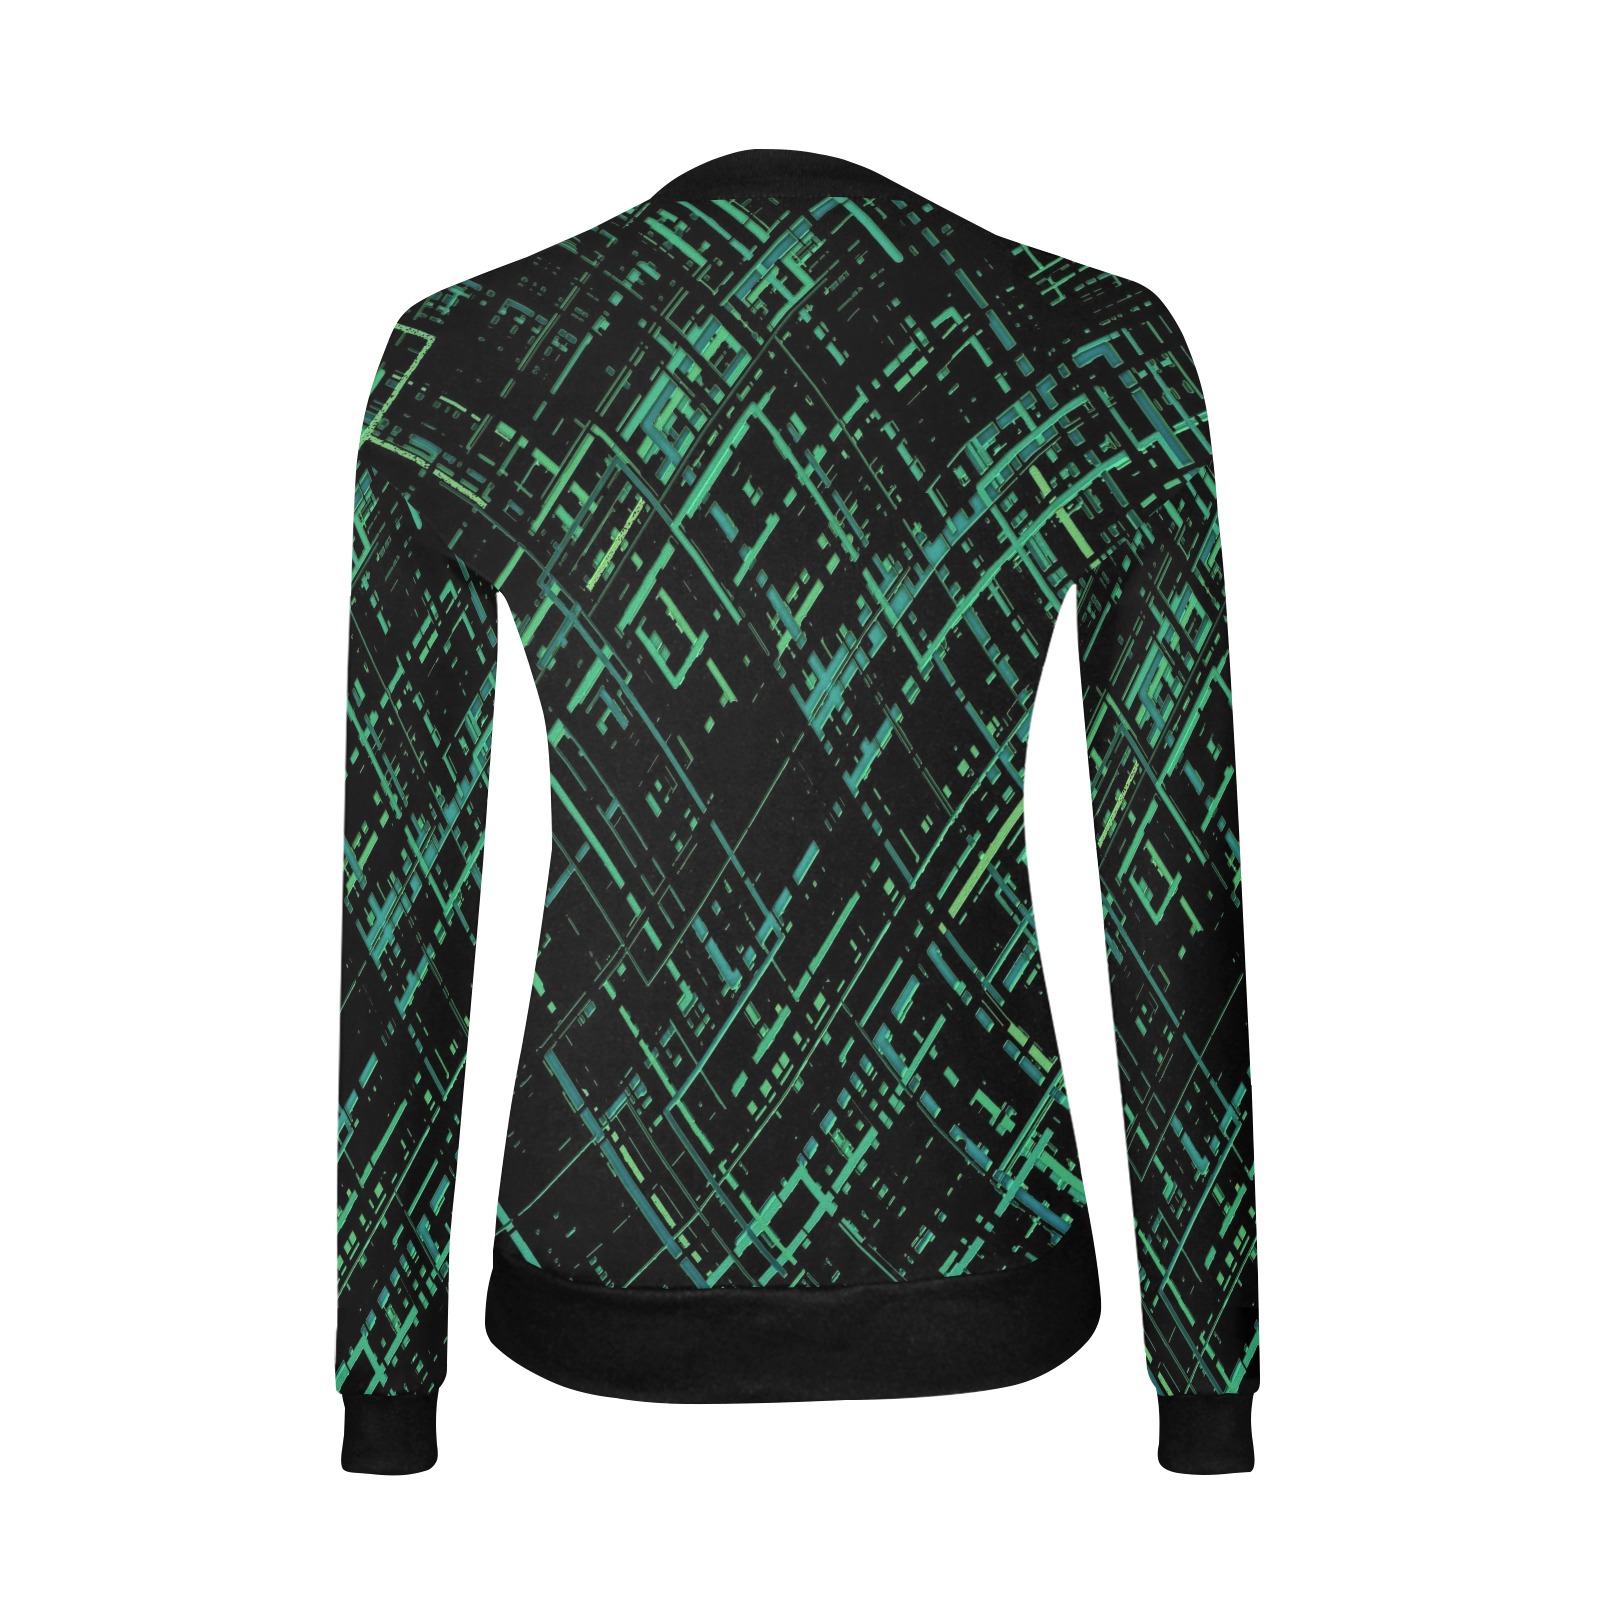 Criss-Cross Pattern (Green/Black) Women's All Over Print V-Neck Sweater (Model H48)